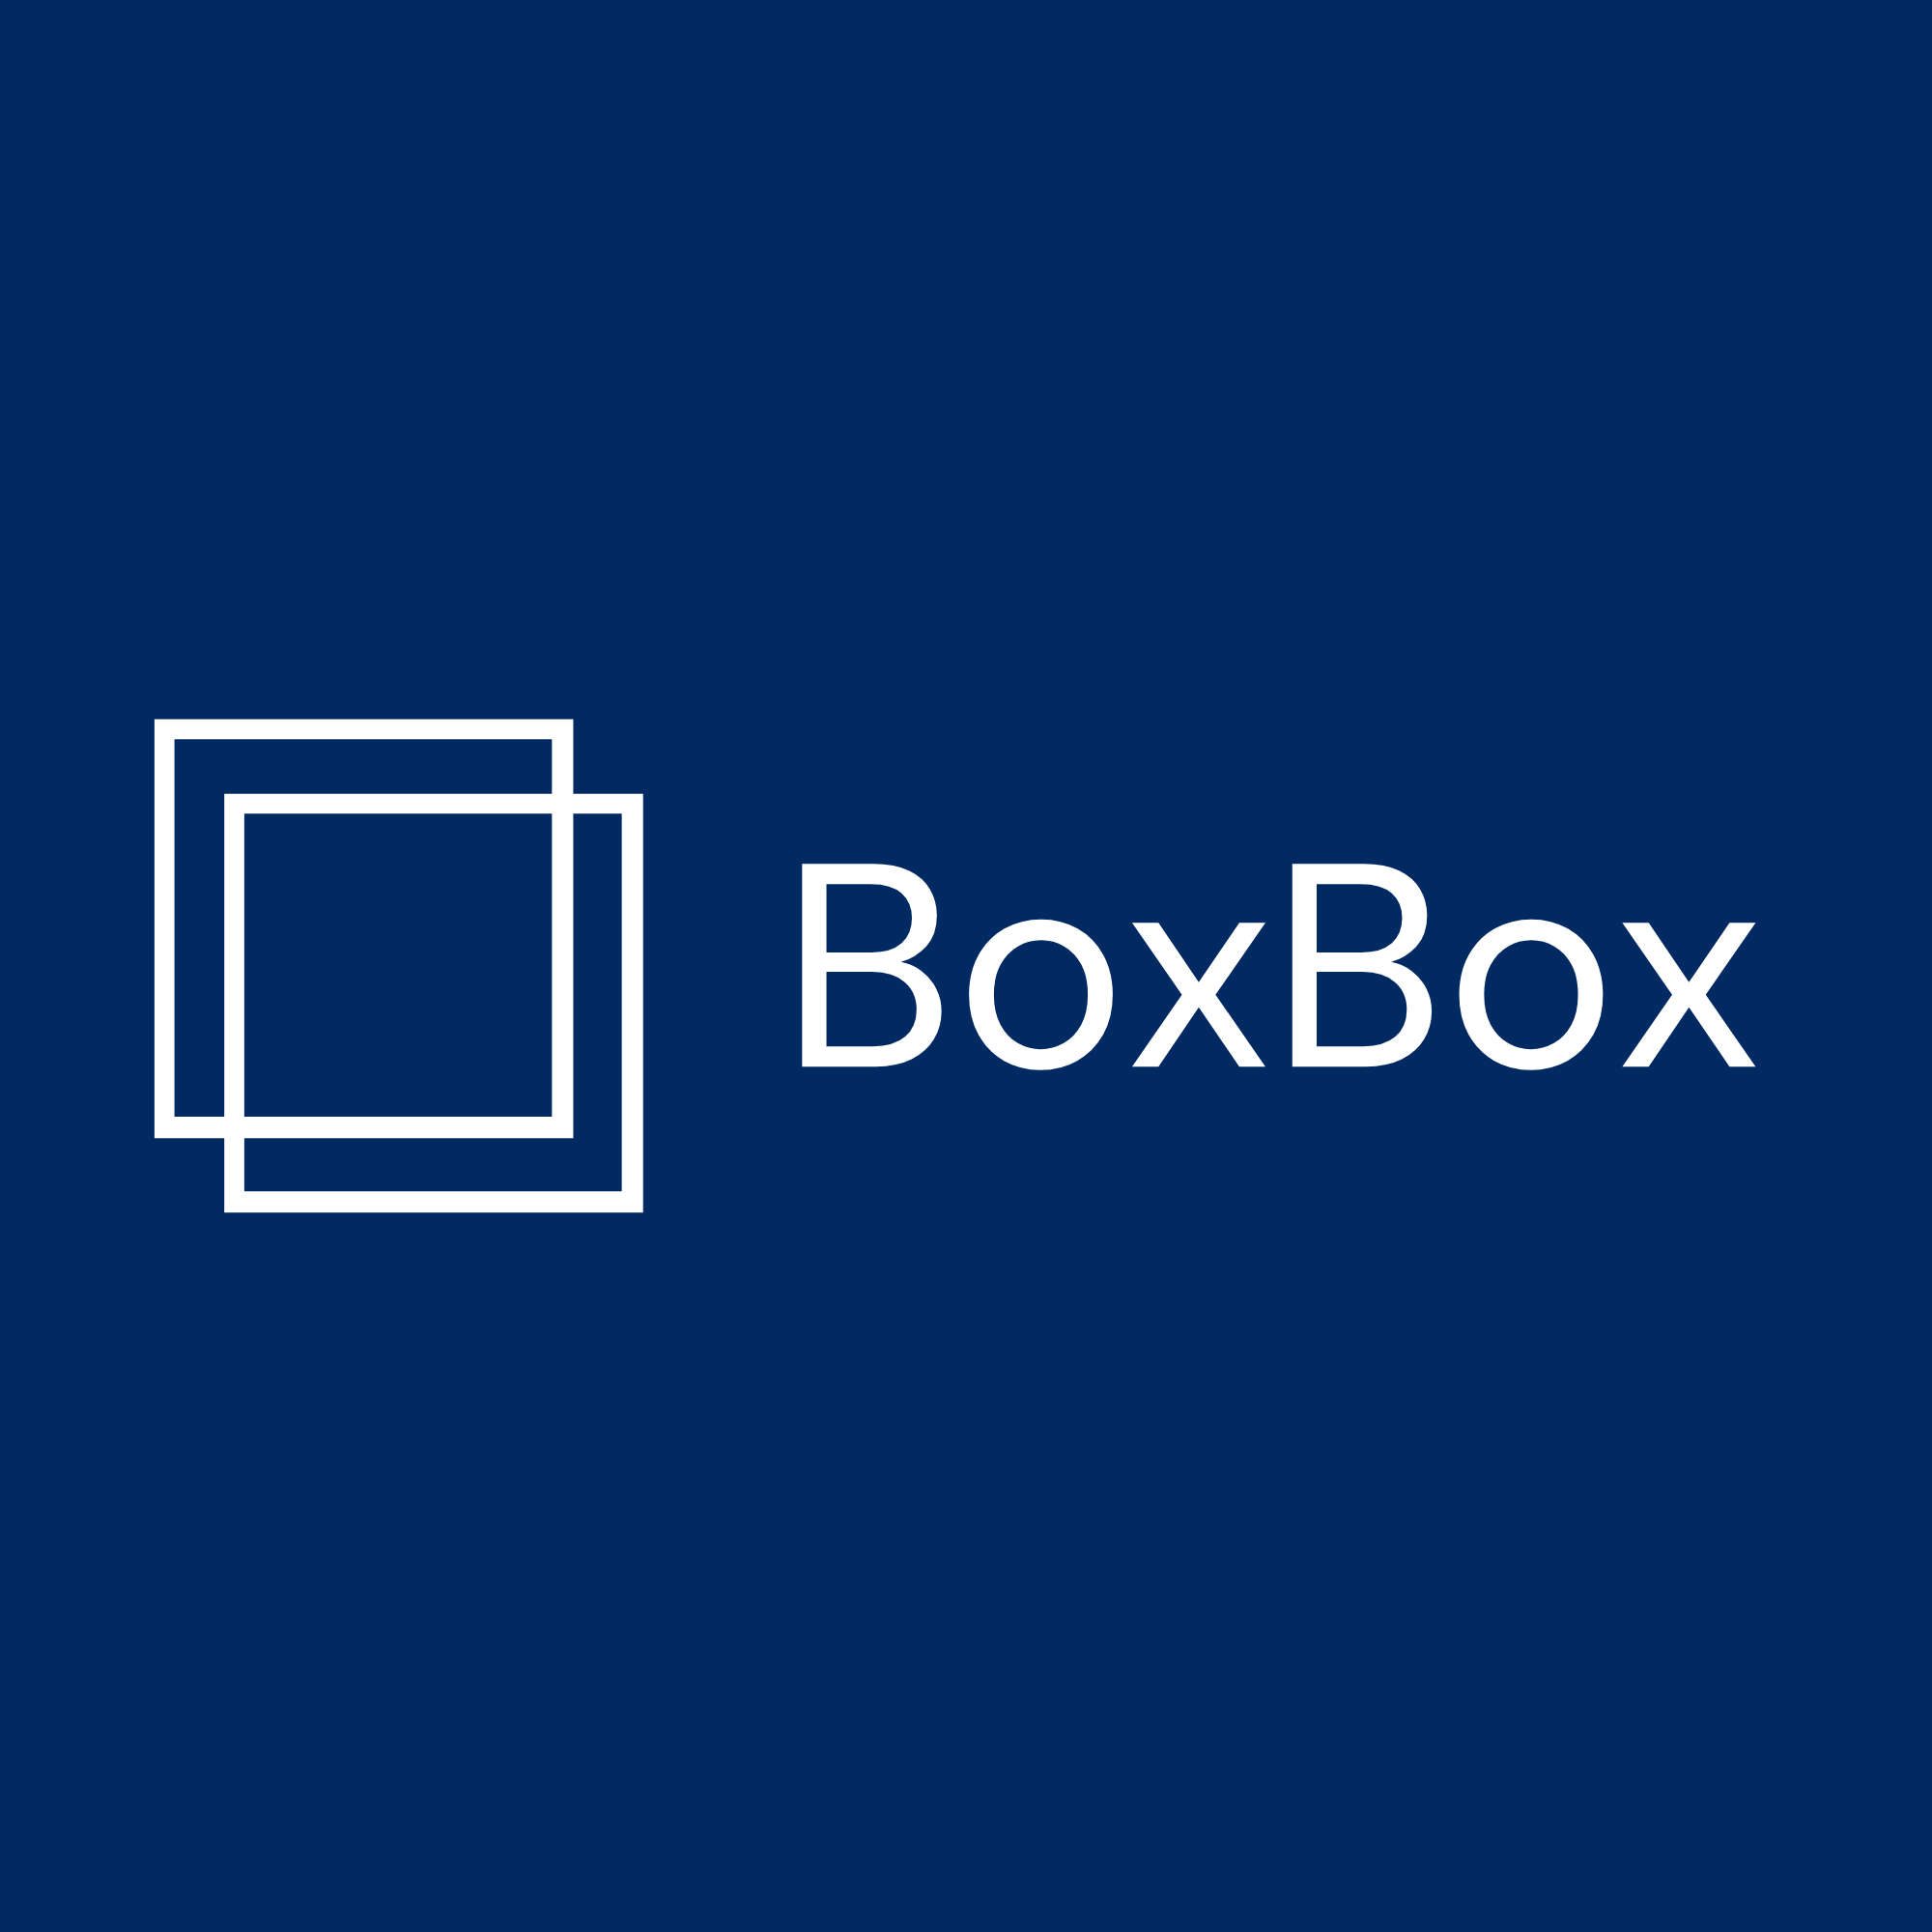 Boxbox